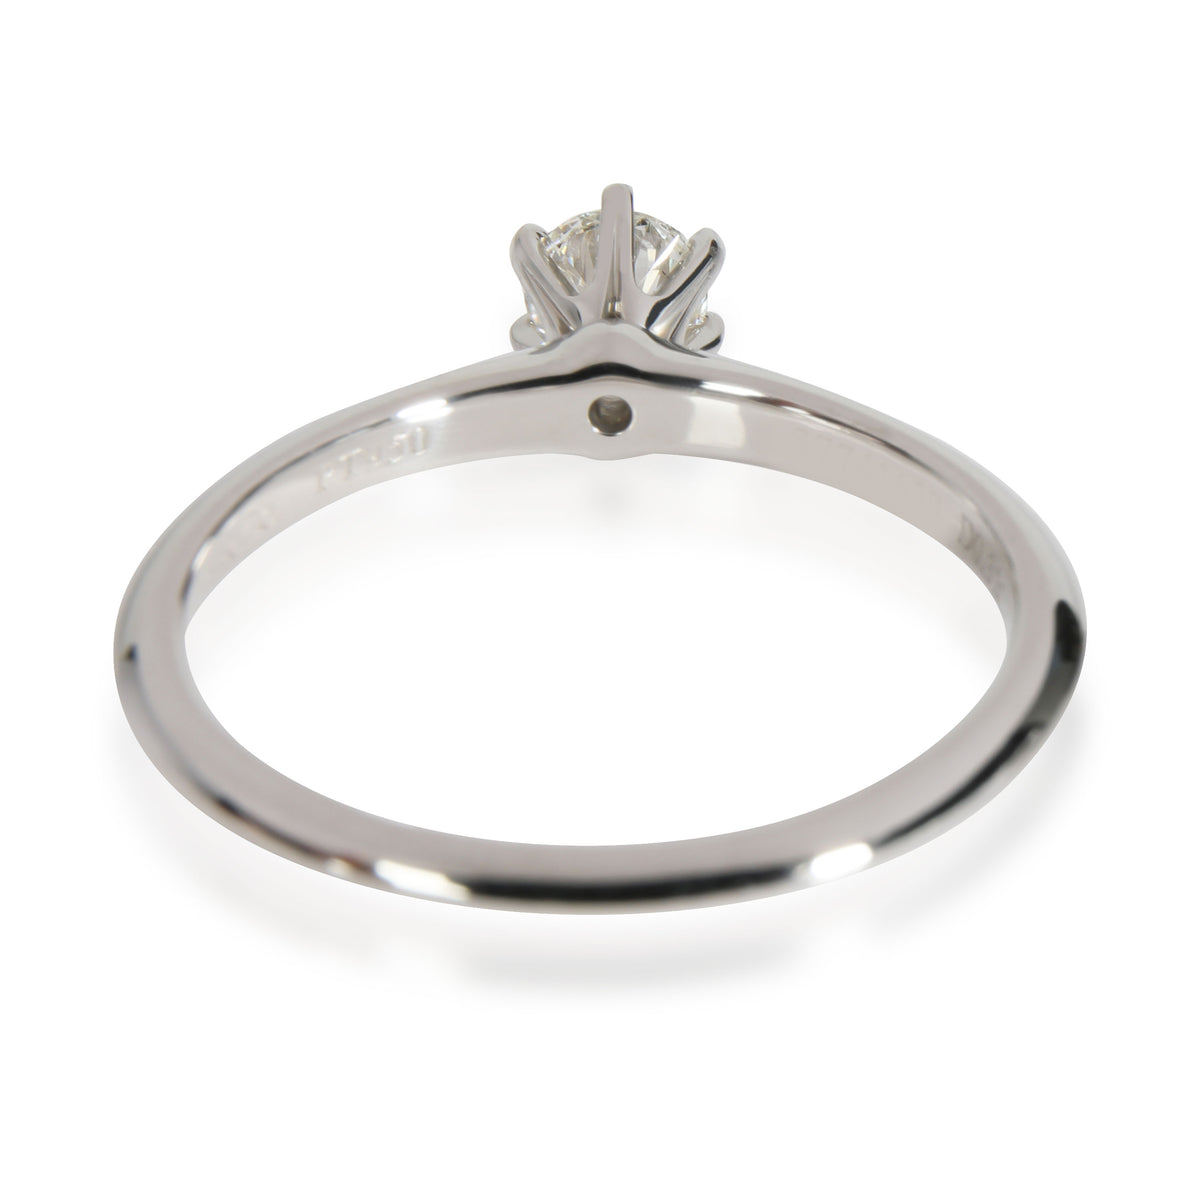 Tiffany & Co. Diamond Engagement Ring in Platinum Platinum H VS1 0.32 CTW